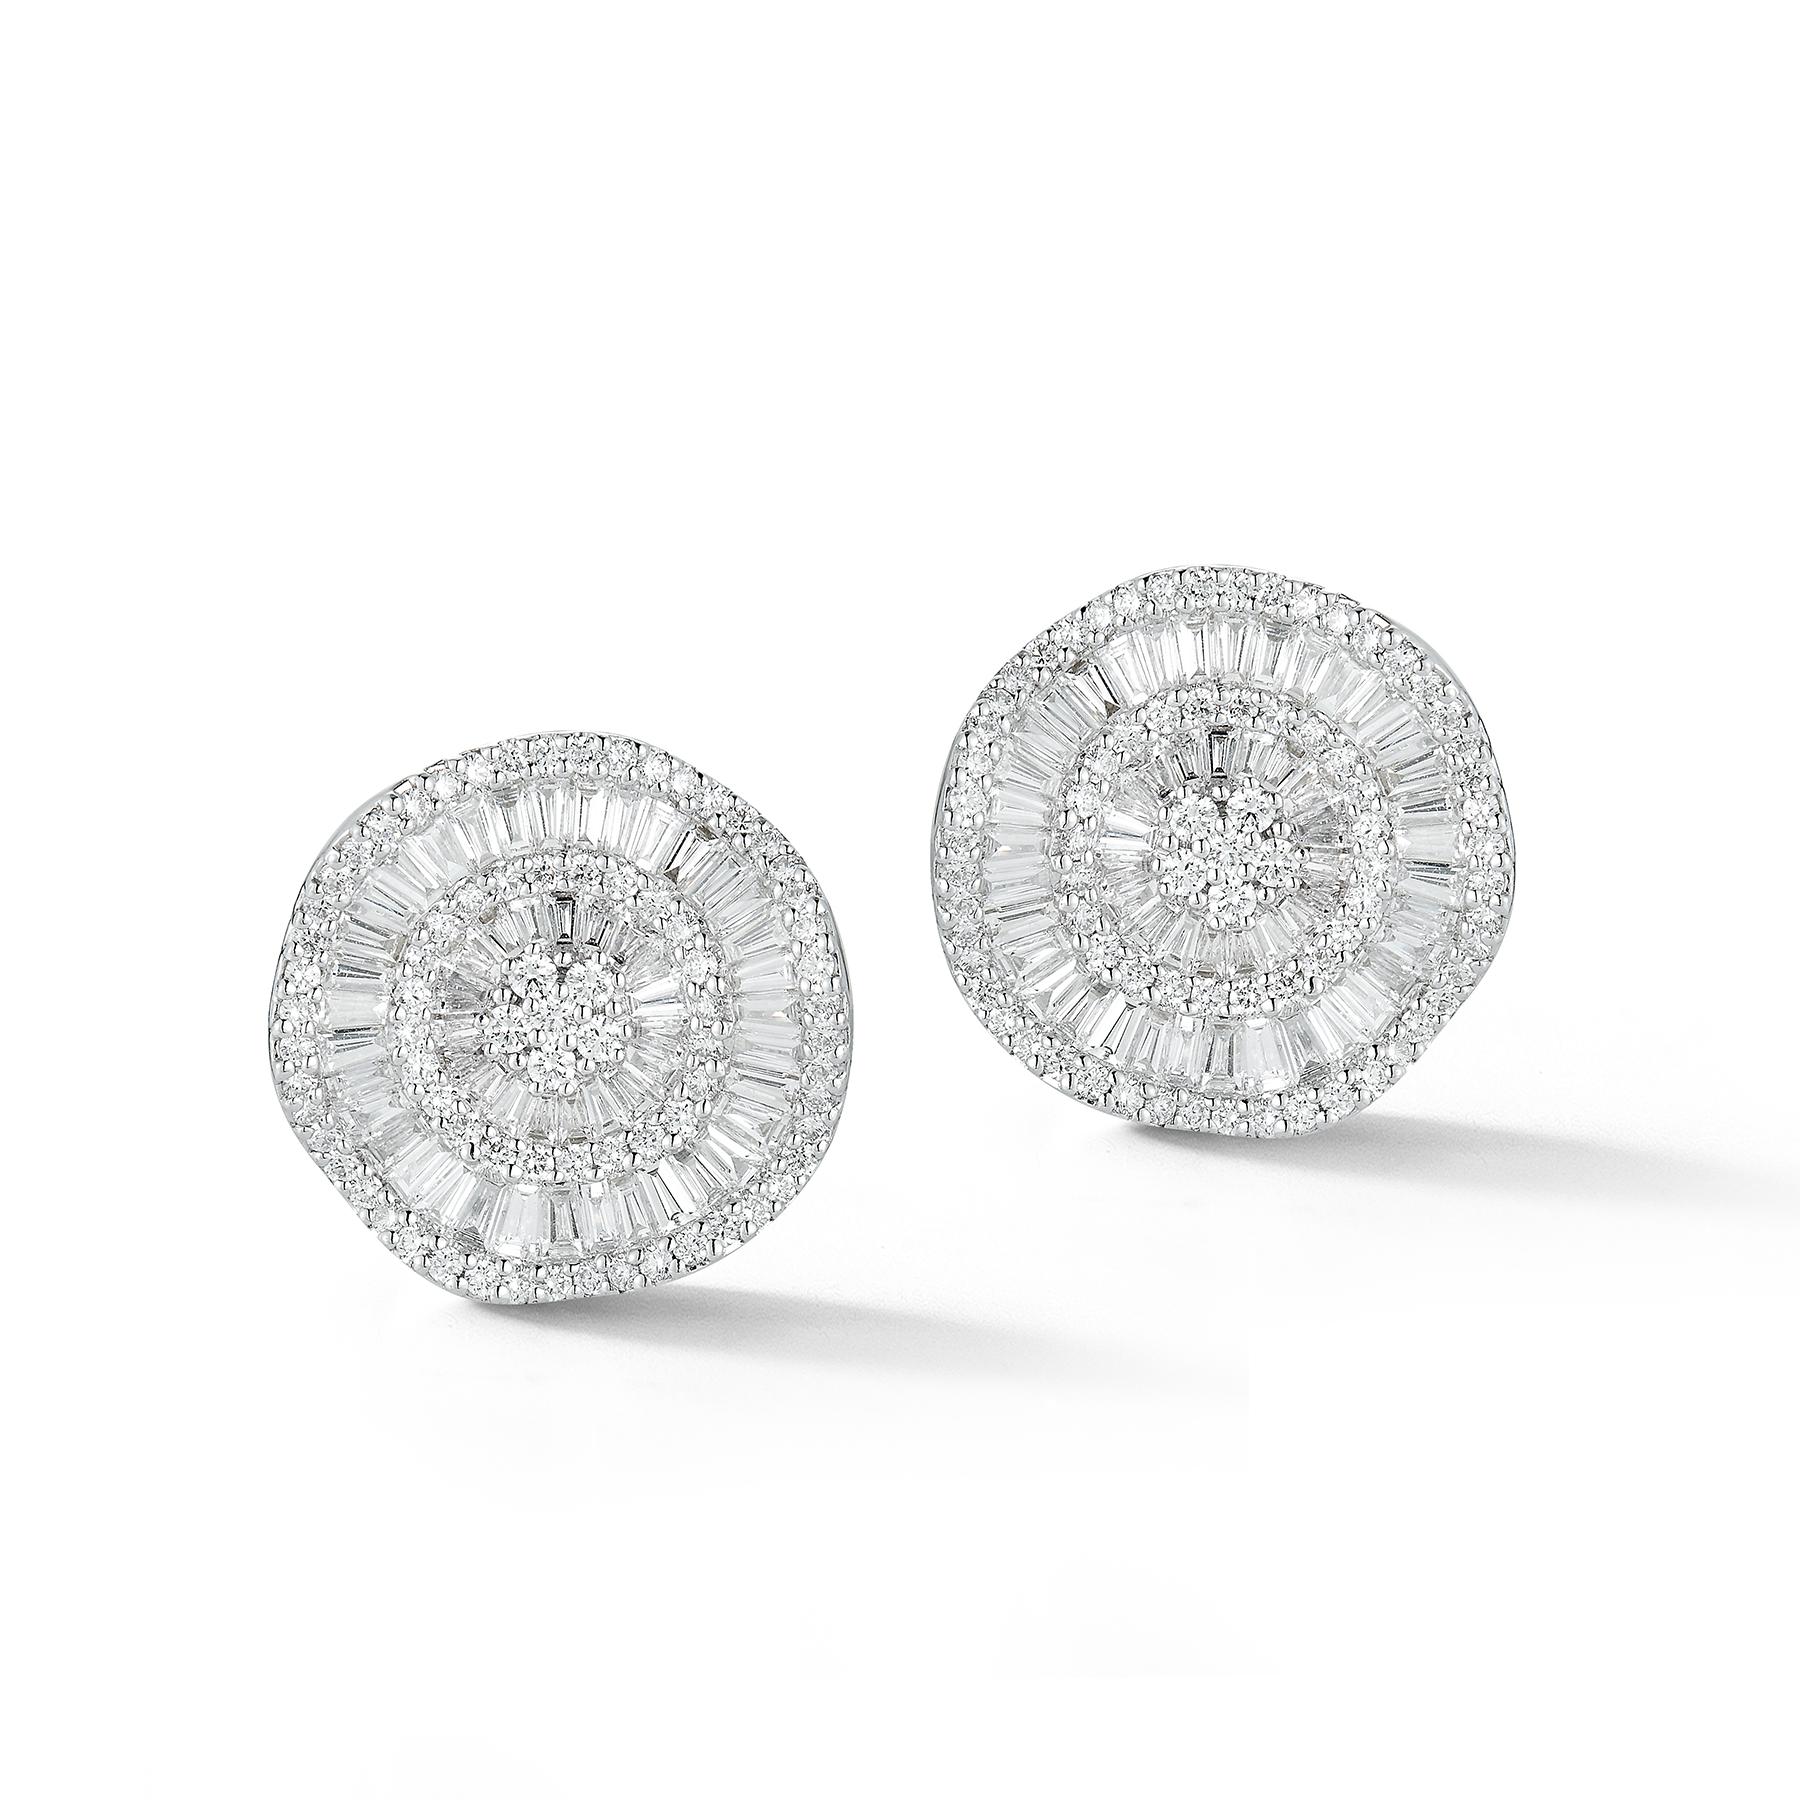 Superbes boucles d'oreilles en or blanc 18 carats avec 156 diamants ronds sans défaut pesant 1,66 carats et 108 diamants baguettes sans défaut pesant 3,86 carats. 